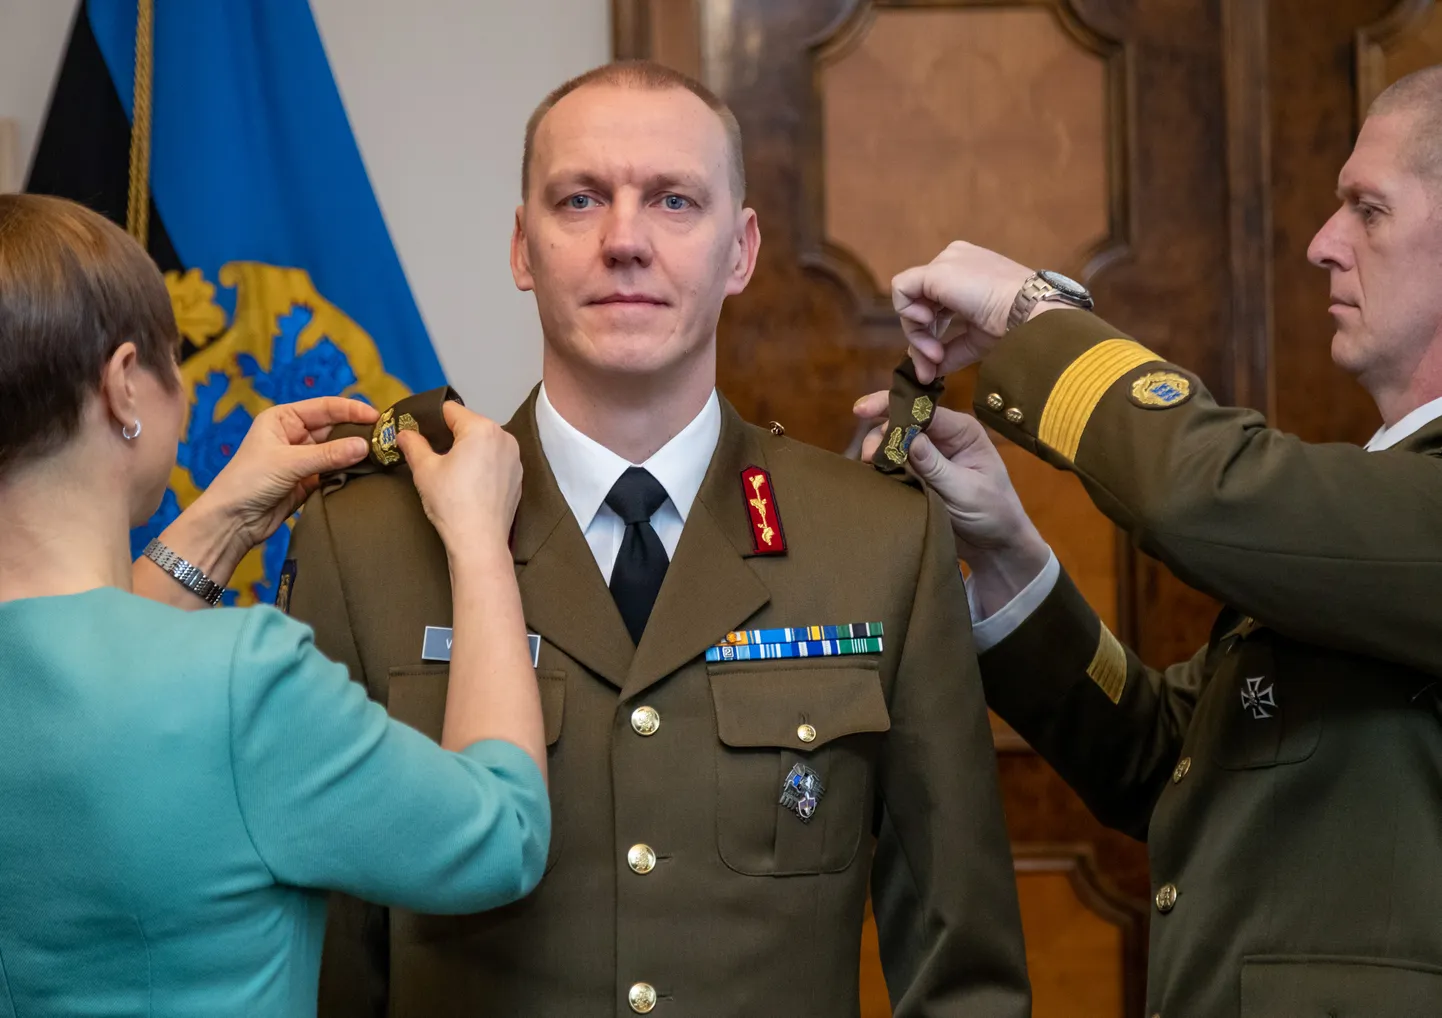 Президент Эстонии Керсти Кальюлайд и командующий Силами обороны Эстонии Мартин Херем меняют погоны Вейко-Велло Пальма после того, как он был повышен до звания бригадного генерала, Таллинн, 23 февраля 2019 года.